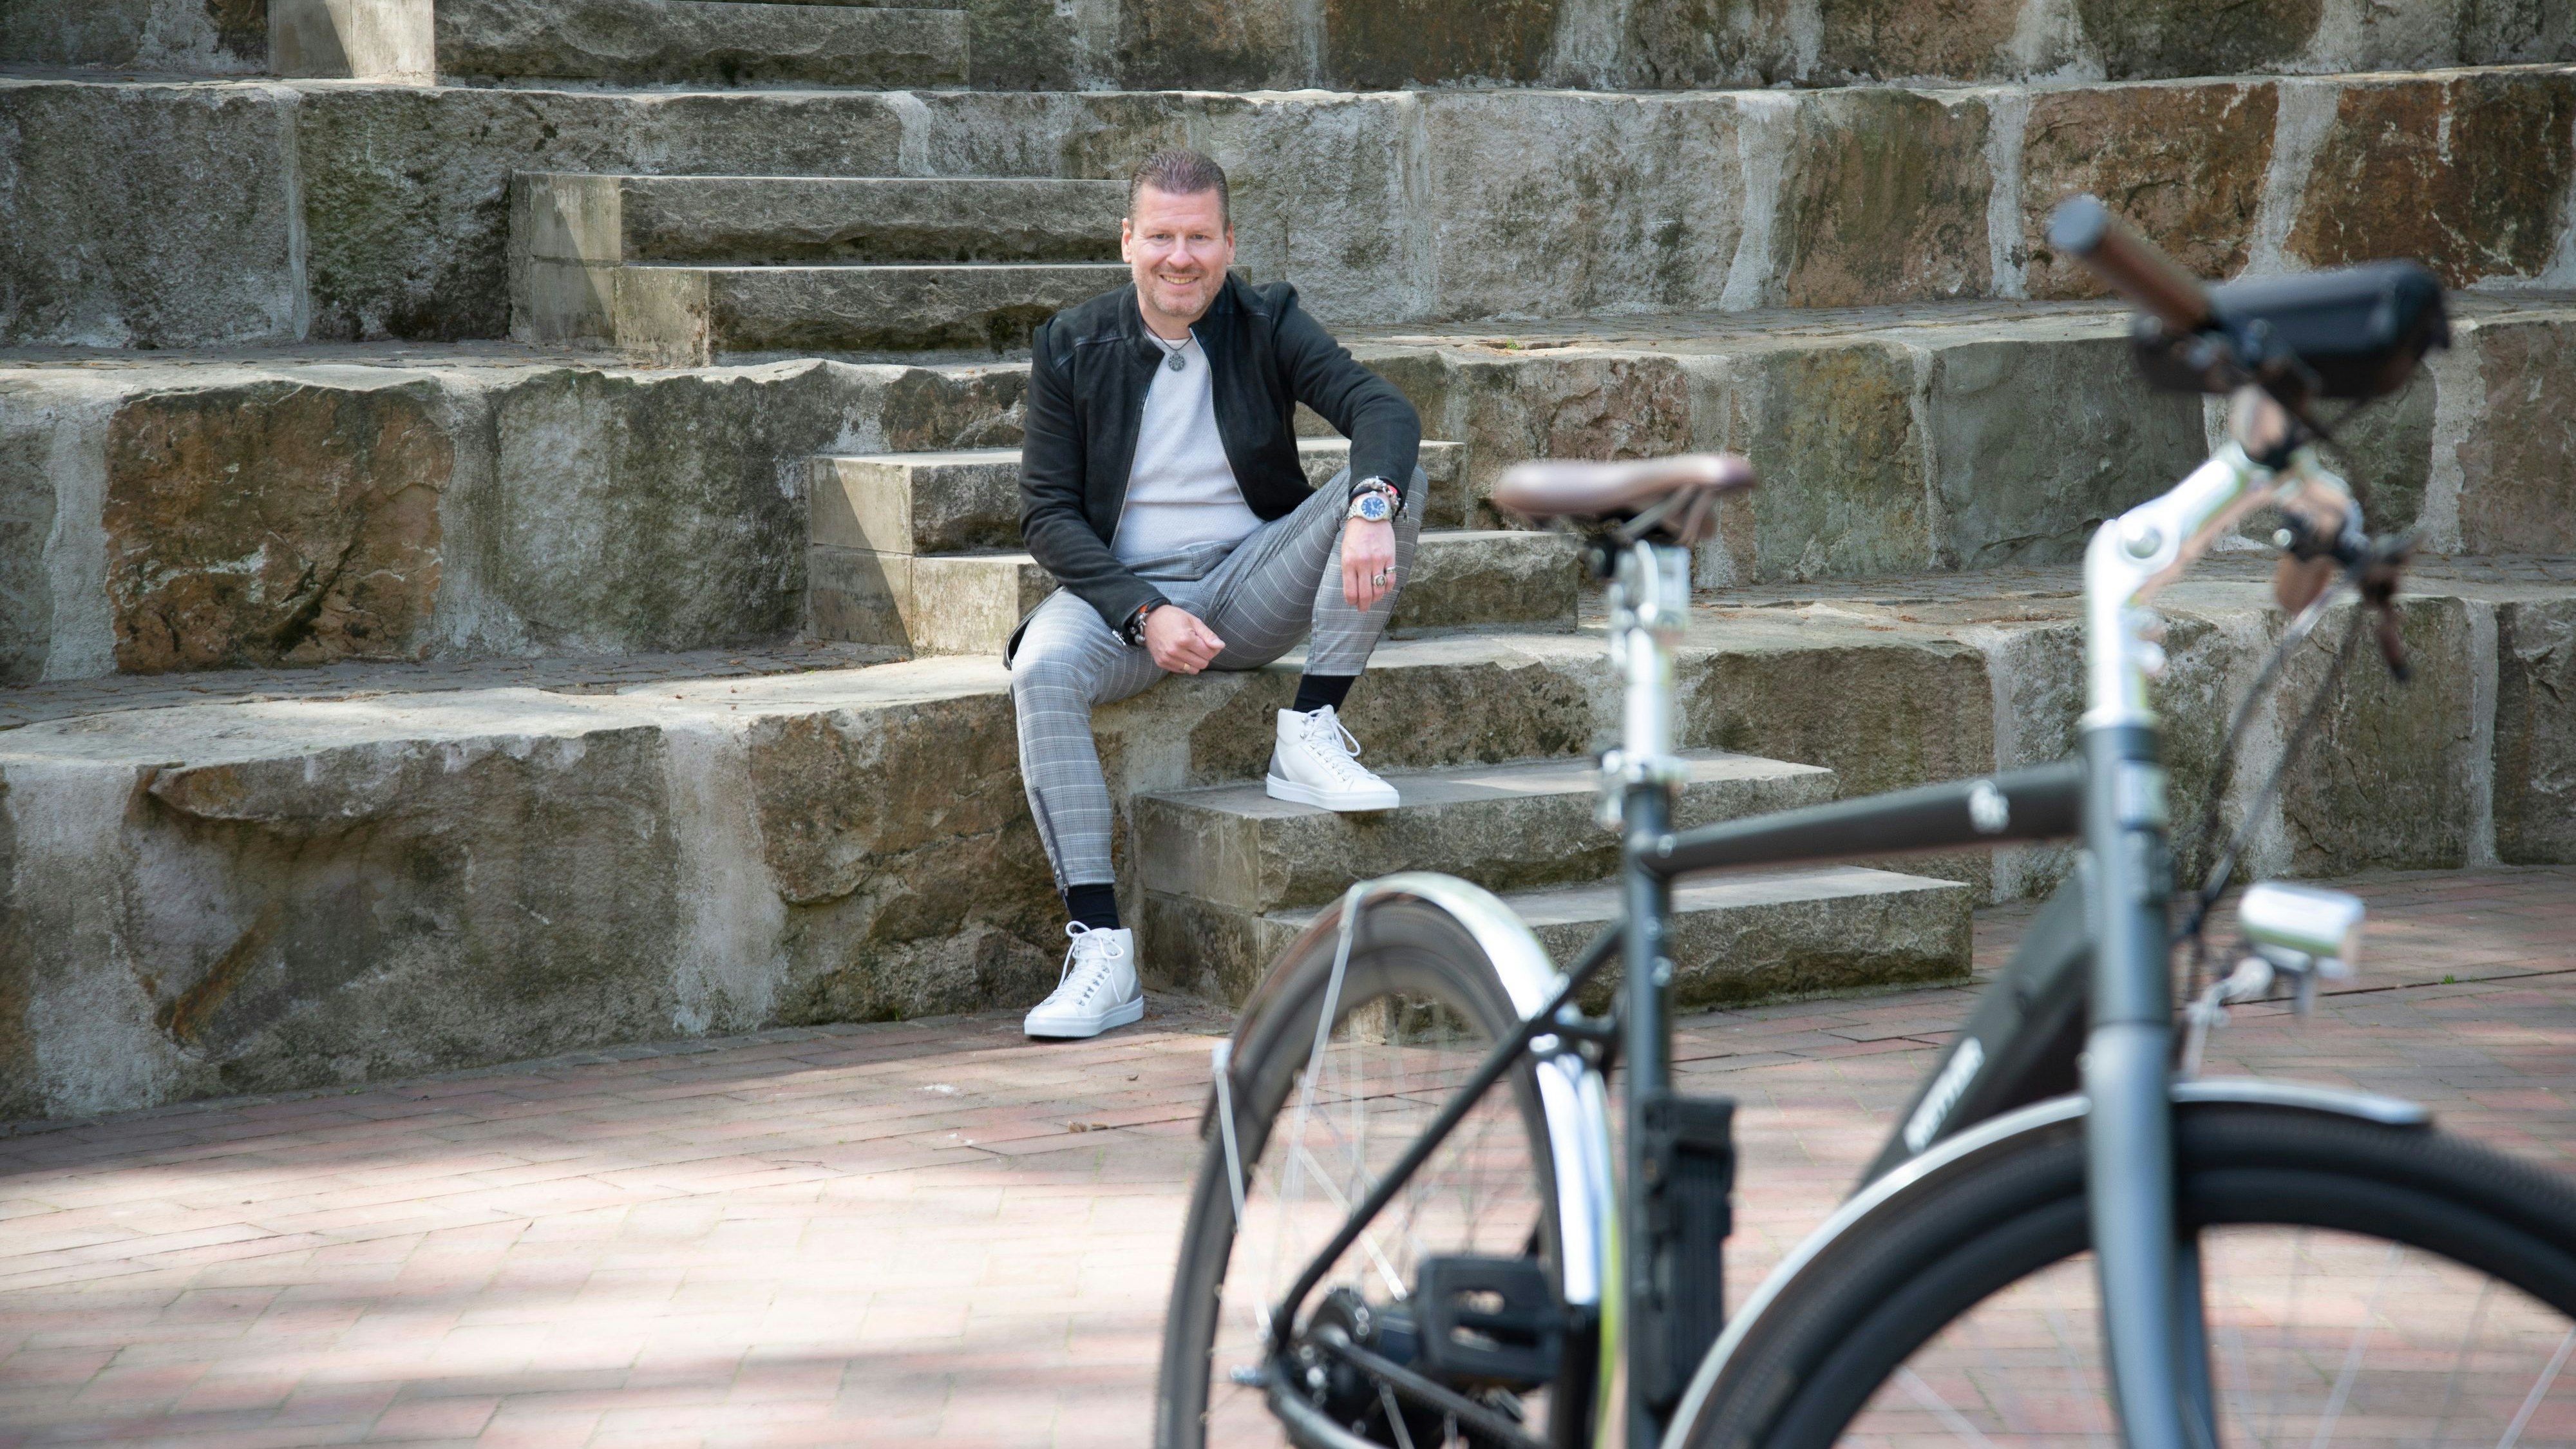 Emsteks Bürgermeister Michael Fischer hat mit dem Fahrrad ein paar schöne Plätze in seiner Gemeinde angesteuert. Foto: Tanja Schulte-Saß